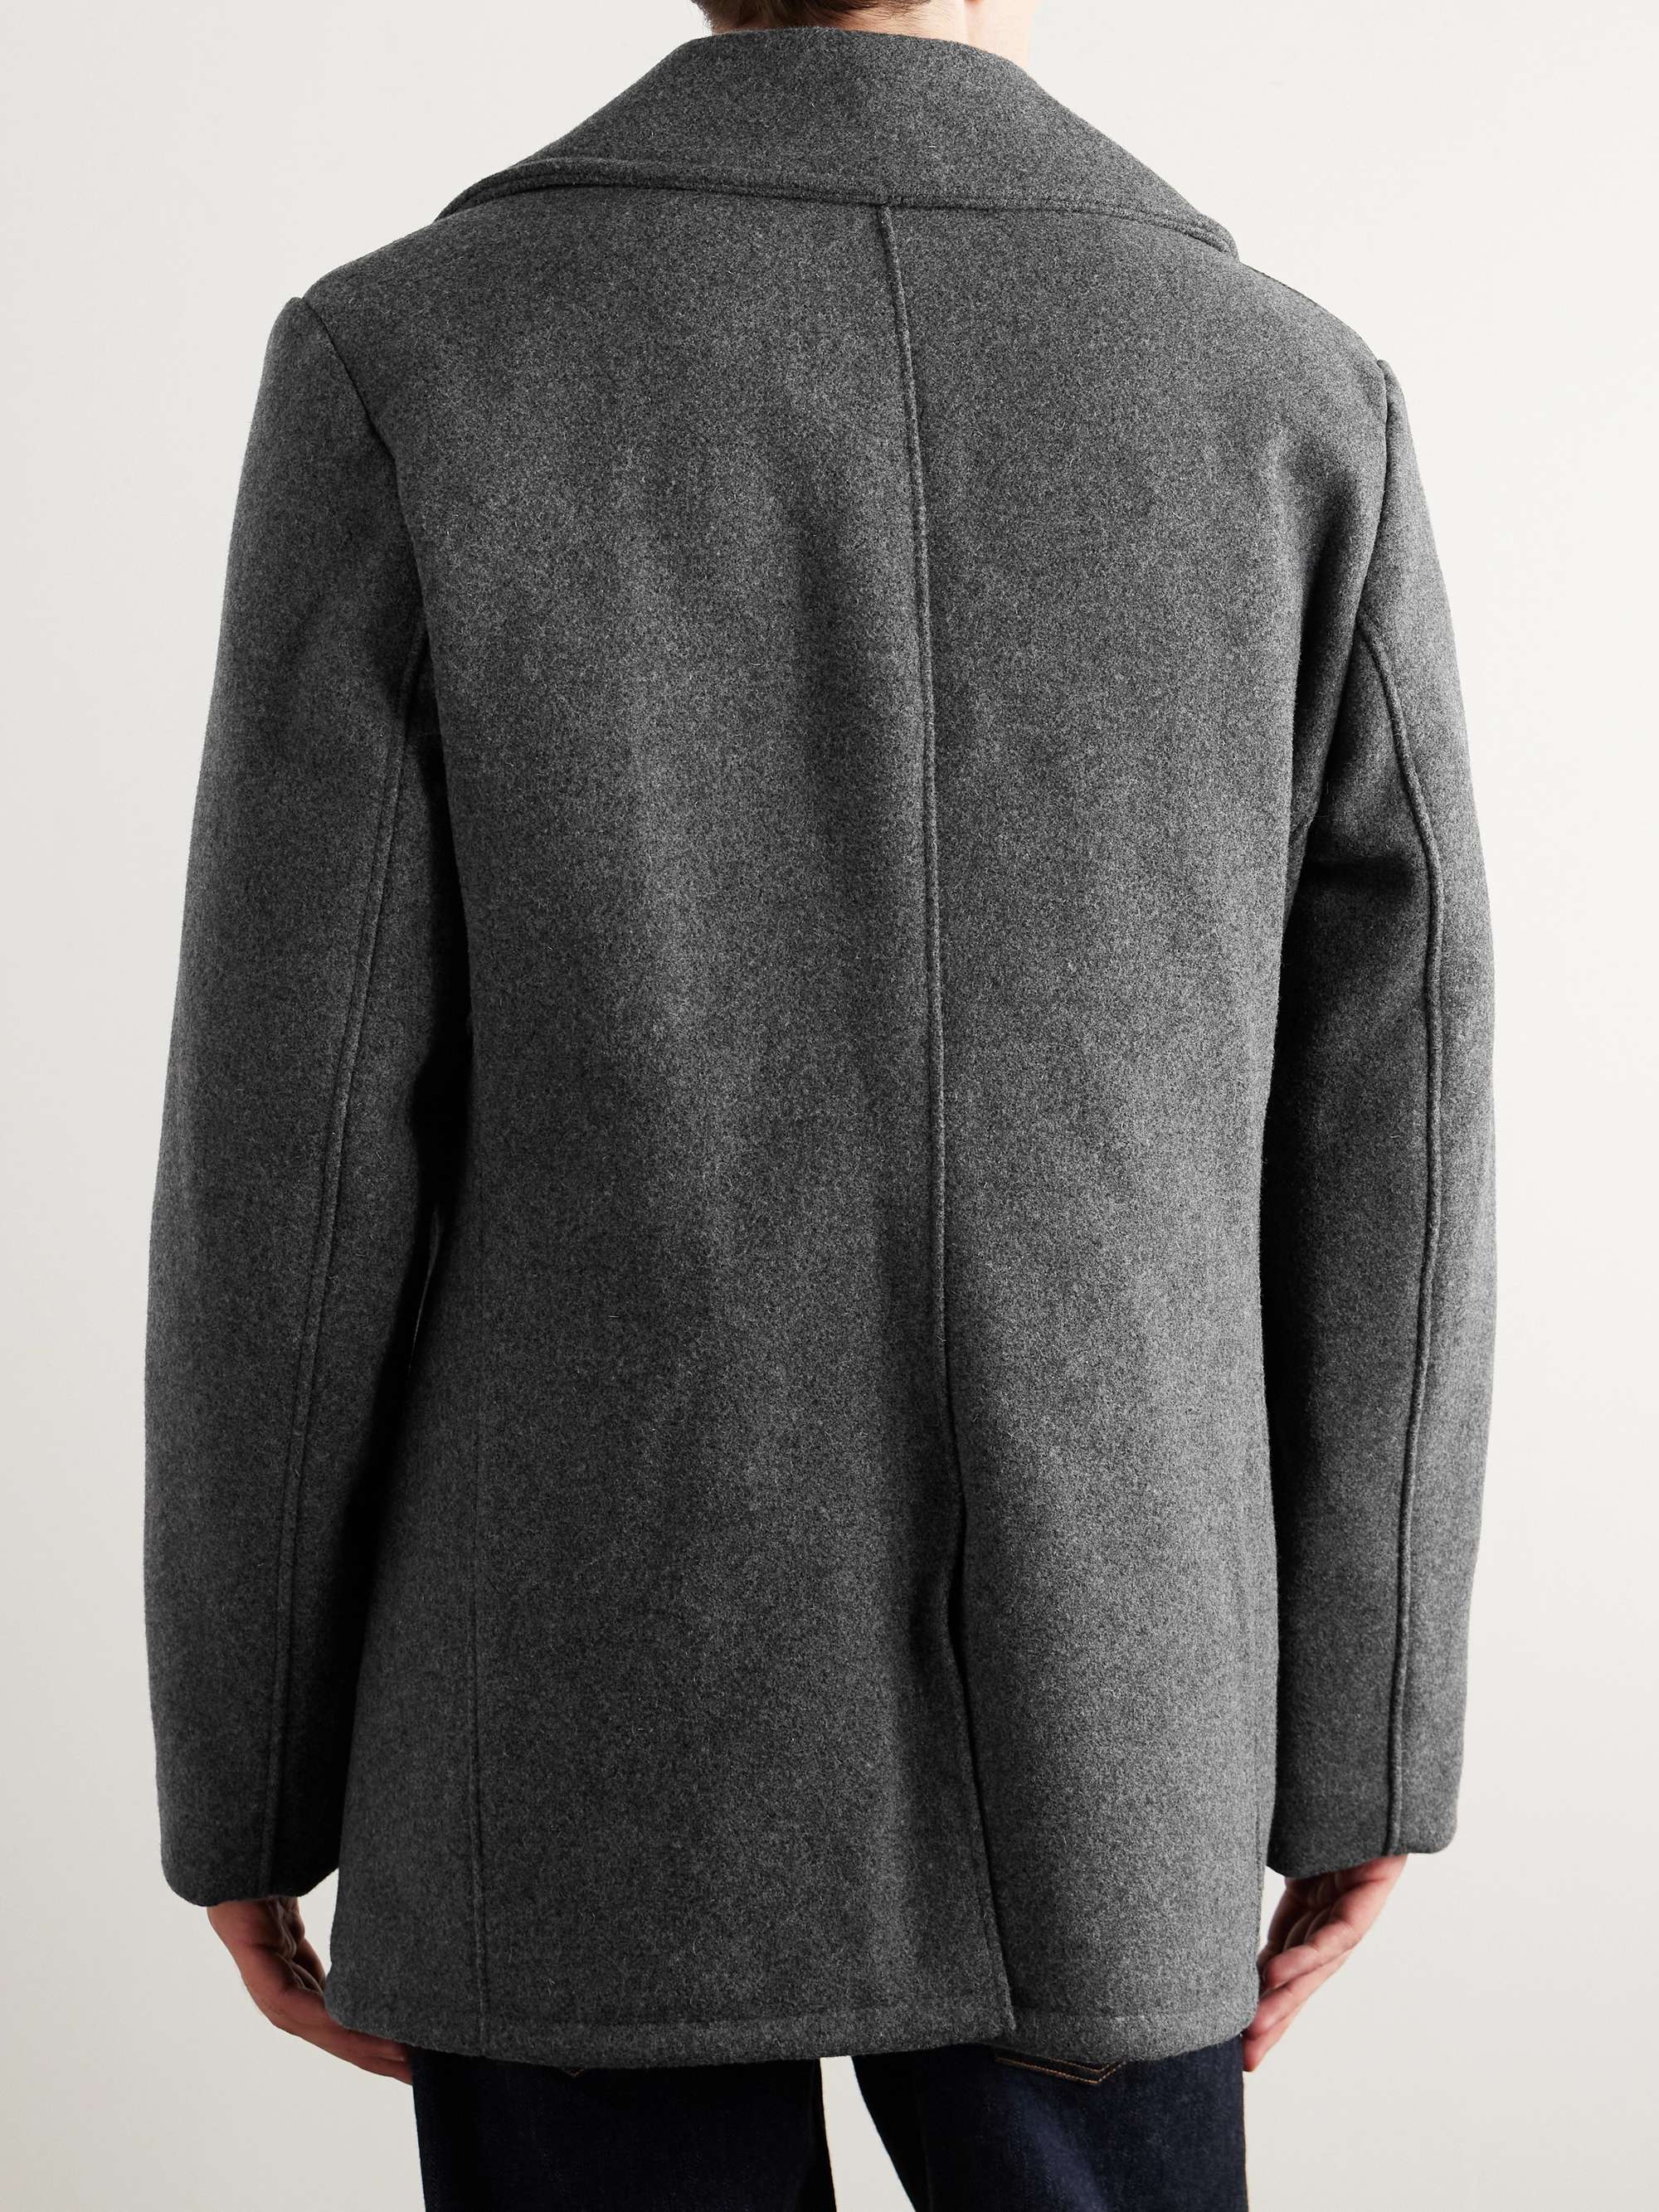 SCHOTT Melton Wool-Blend Peacoat for Men | MR PORTER